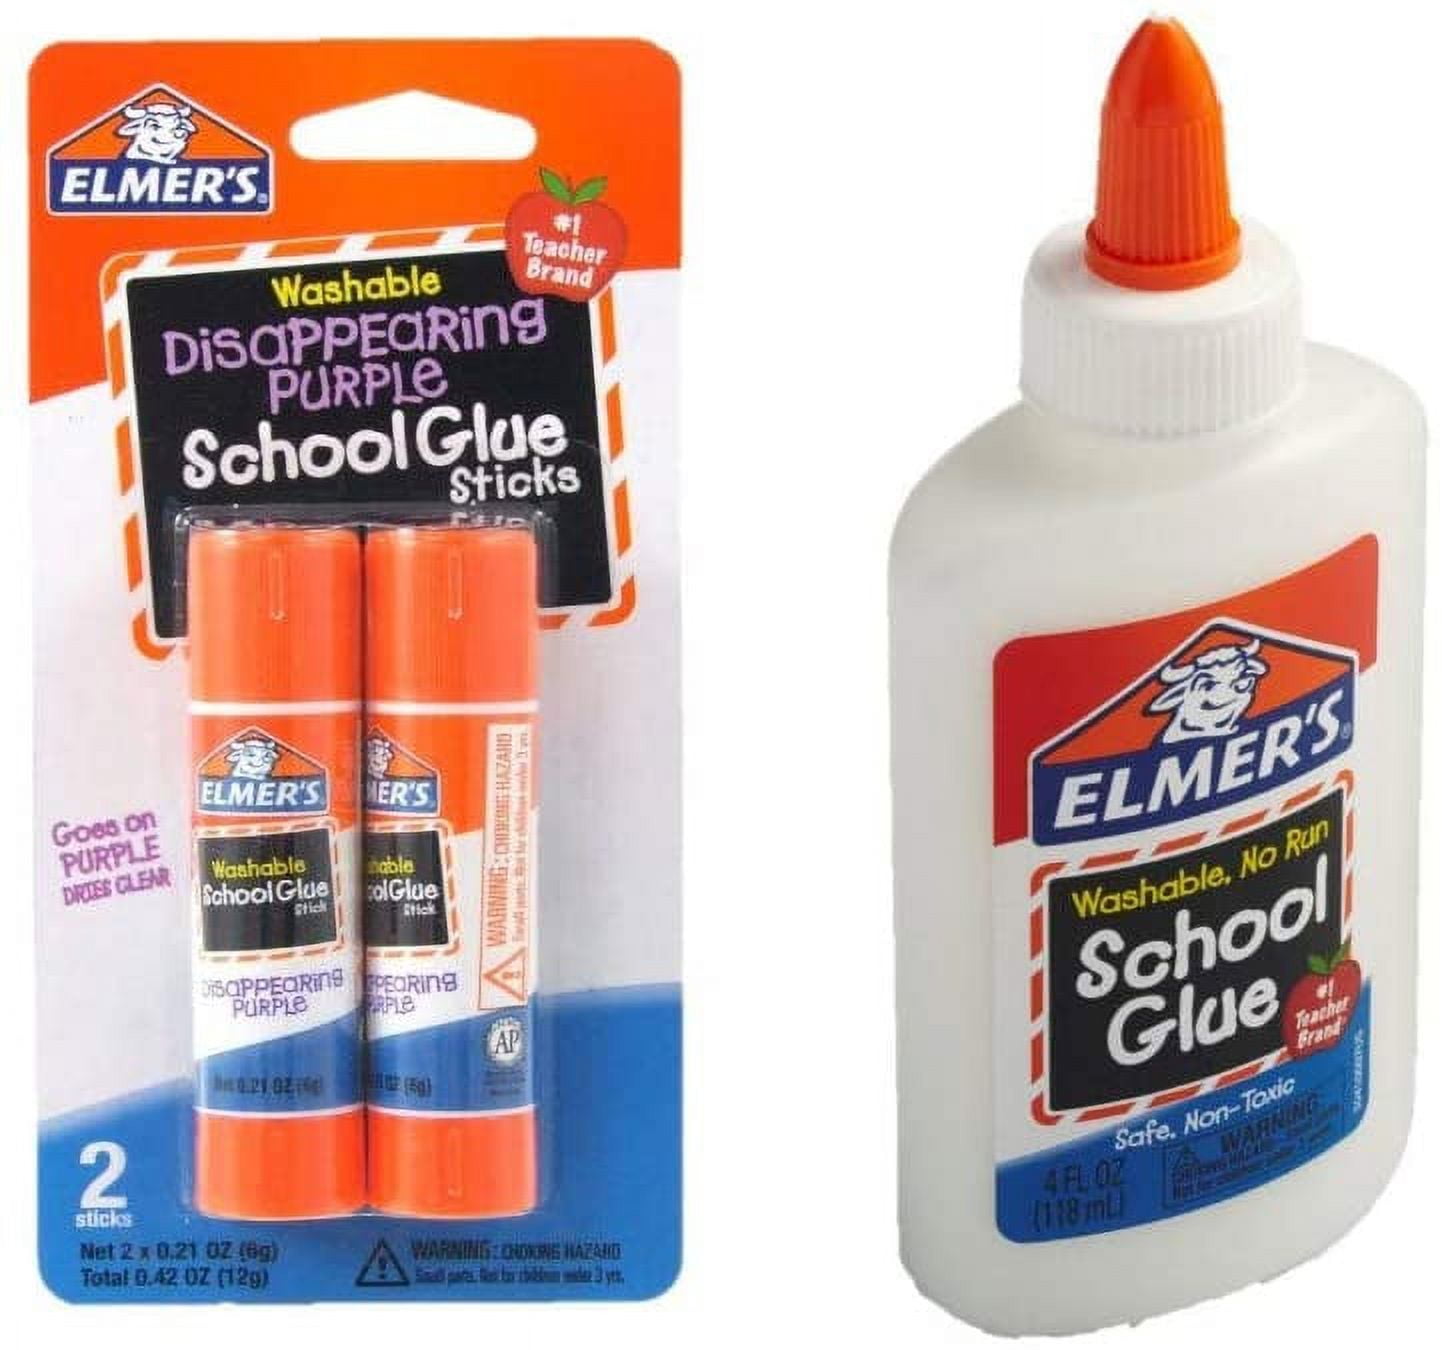 RETEST! Elmer's Glue as a Pouring Medium?! - Glue All vs. School Glue vs.  Water as a pouring medium 